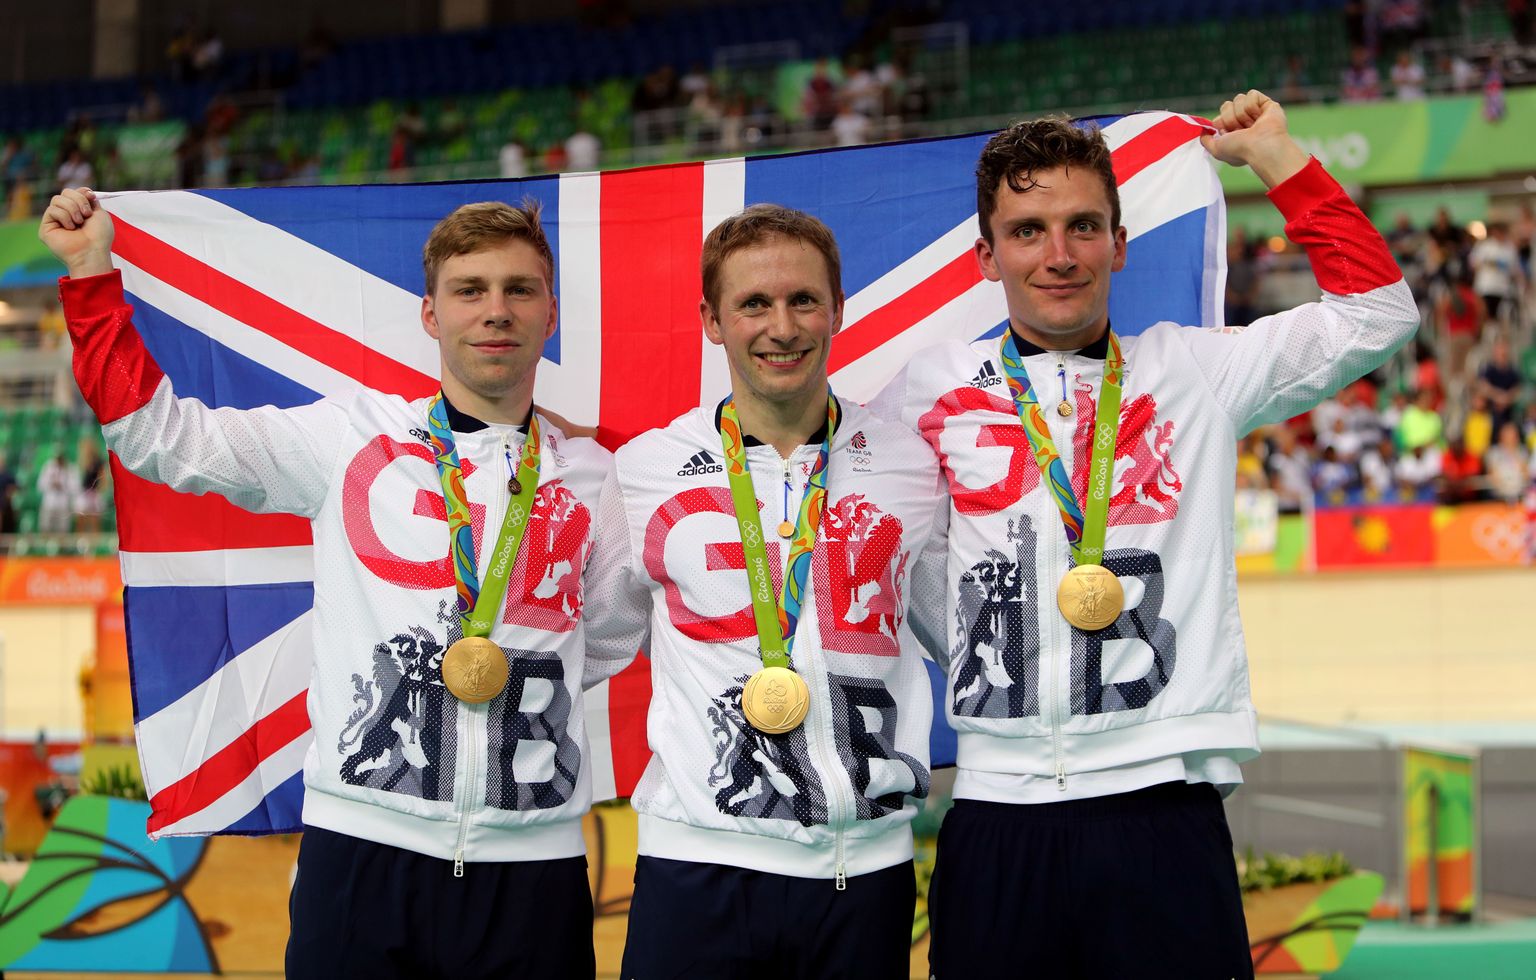 Trekisõidust on olümpiamängudel saanud brittide üks leivanumbreid. Pildil poseerivad kuldmedalitega meeskondliku sprindi olümpiavõitjad Philip Hindes, Jason Kenny ja Callum Skinner.